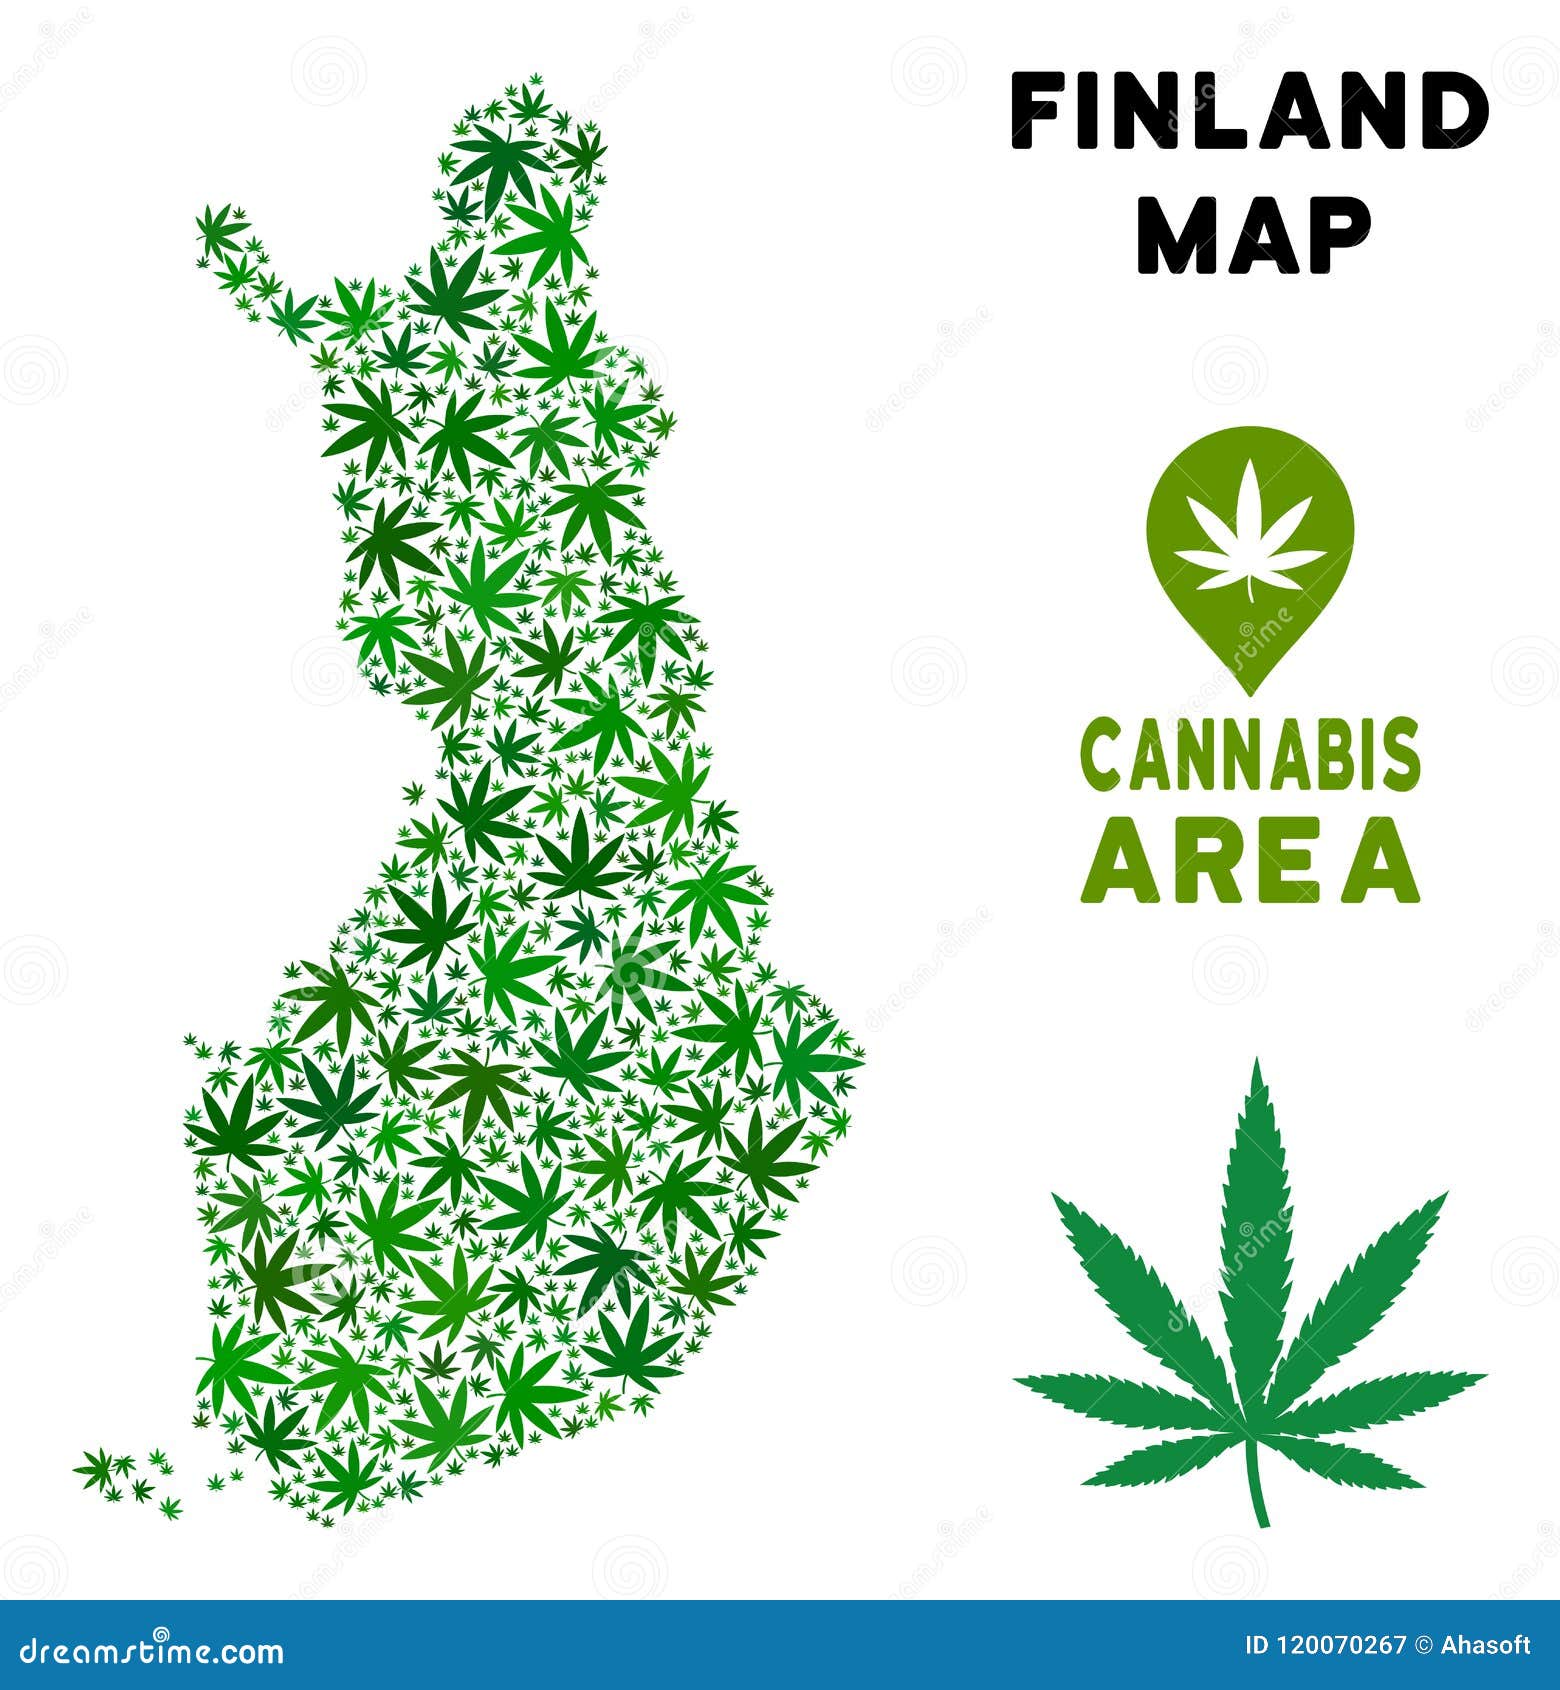 Финляндия марихуана крокодил наркотики видео